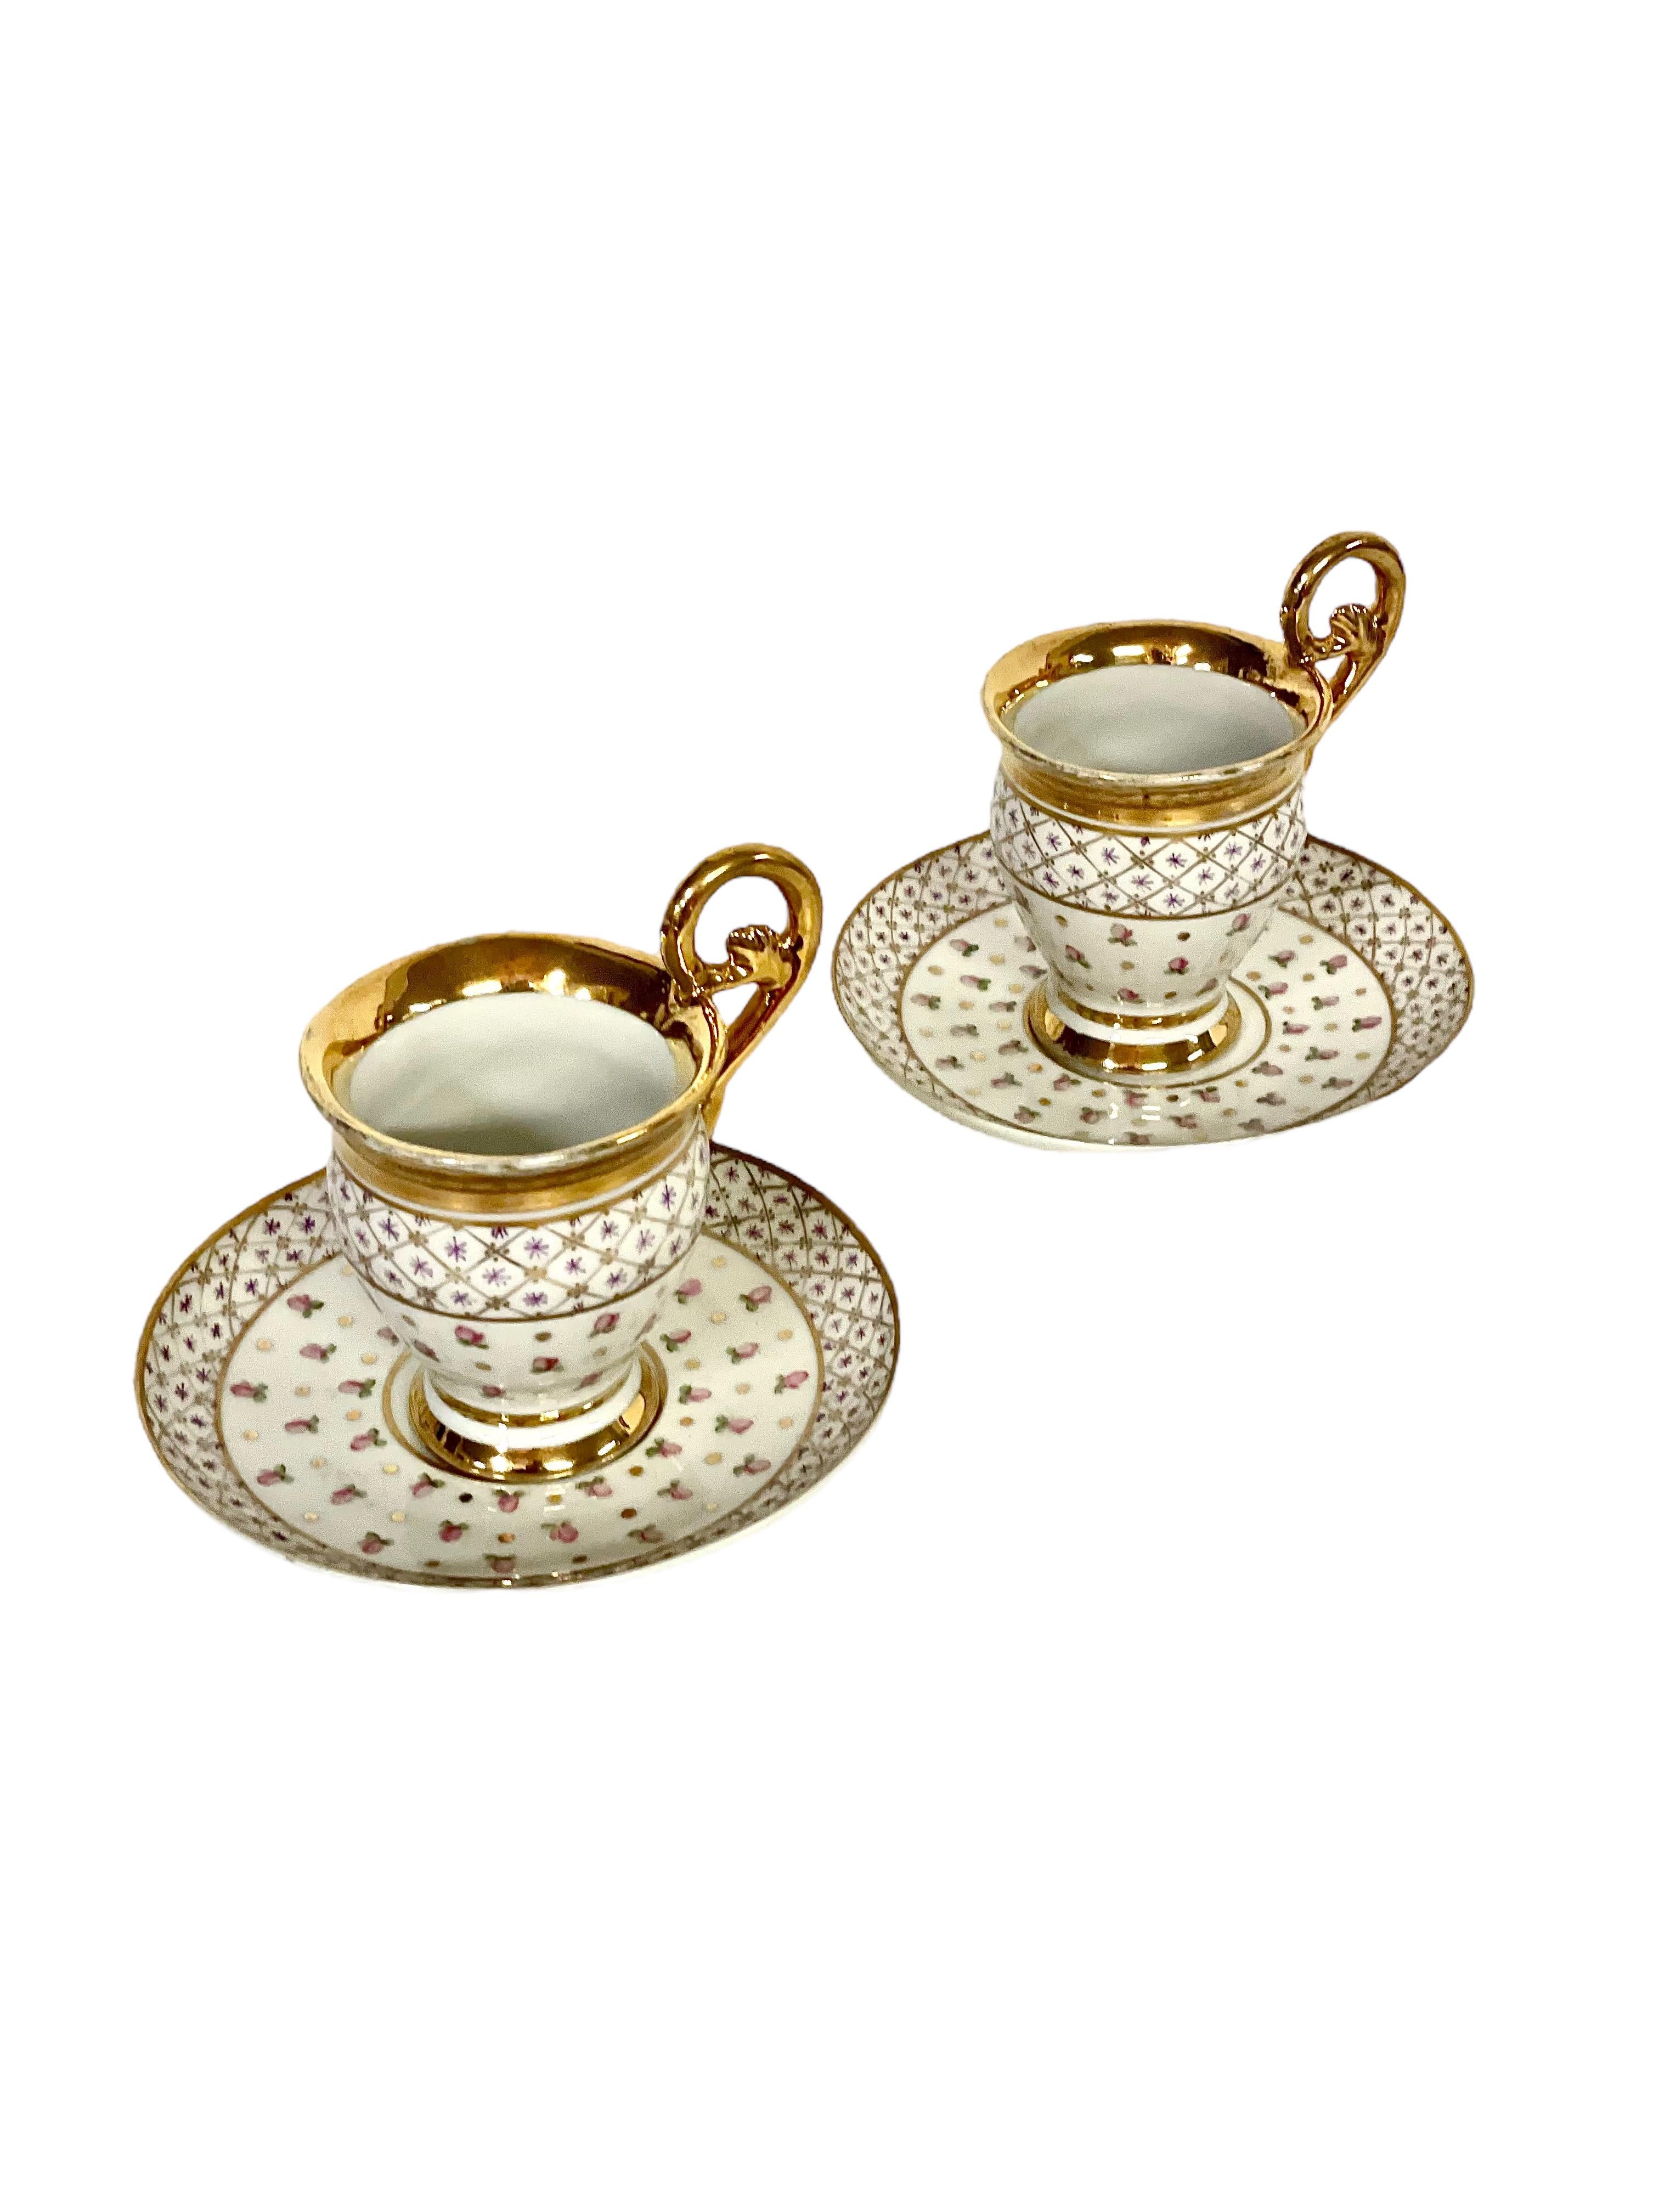 Une paire exquise de tasses à thé et de soucoupes anciennes en porcelaine de Paris, peintes à la main avec des décorations dorées. Datant du début du XIXe siècle, les tasses sont dotées d'anses hautes et incurvées caractéristiques qui, comme les